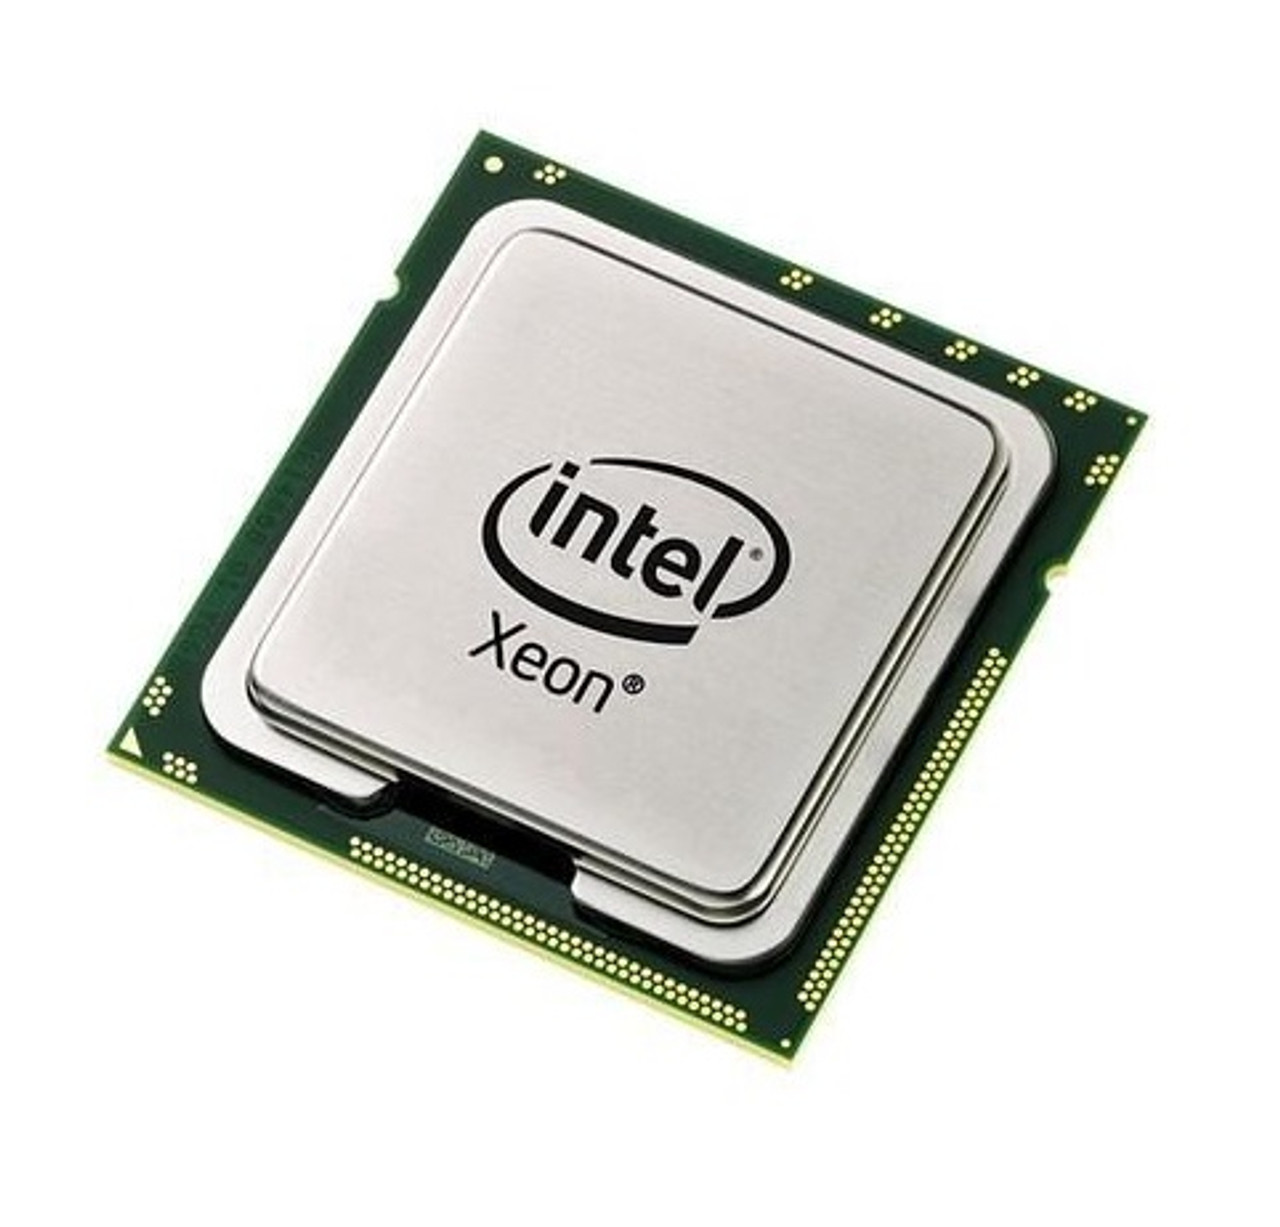 BX80532KC2400DU - Intel Xeon 2.40GHz 400MHz FSB 512KB L2 Cache Socket 604 Processor